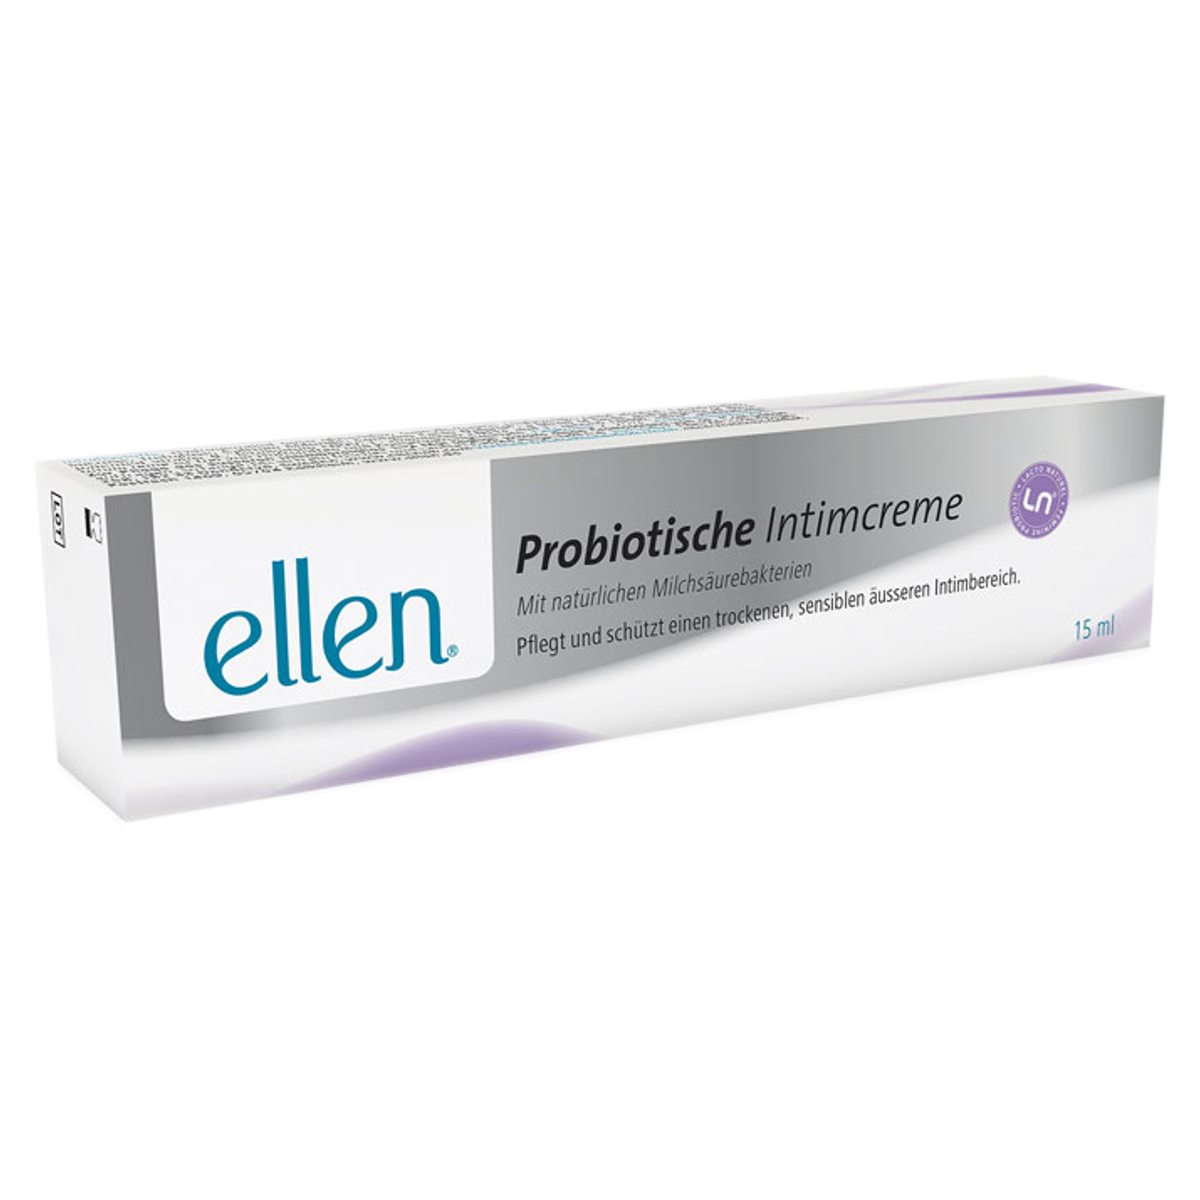 Ellen_Probiotische_Intimcreme_online_kaufen